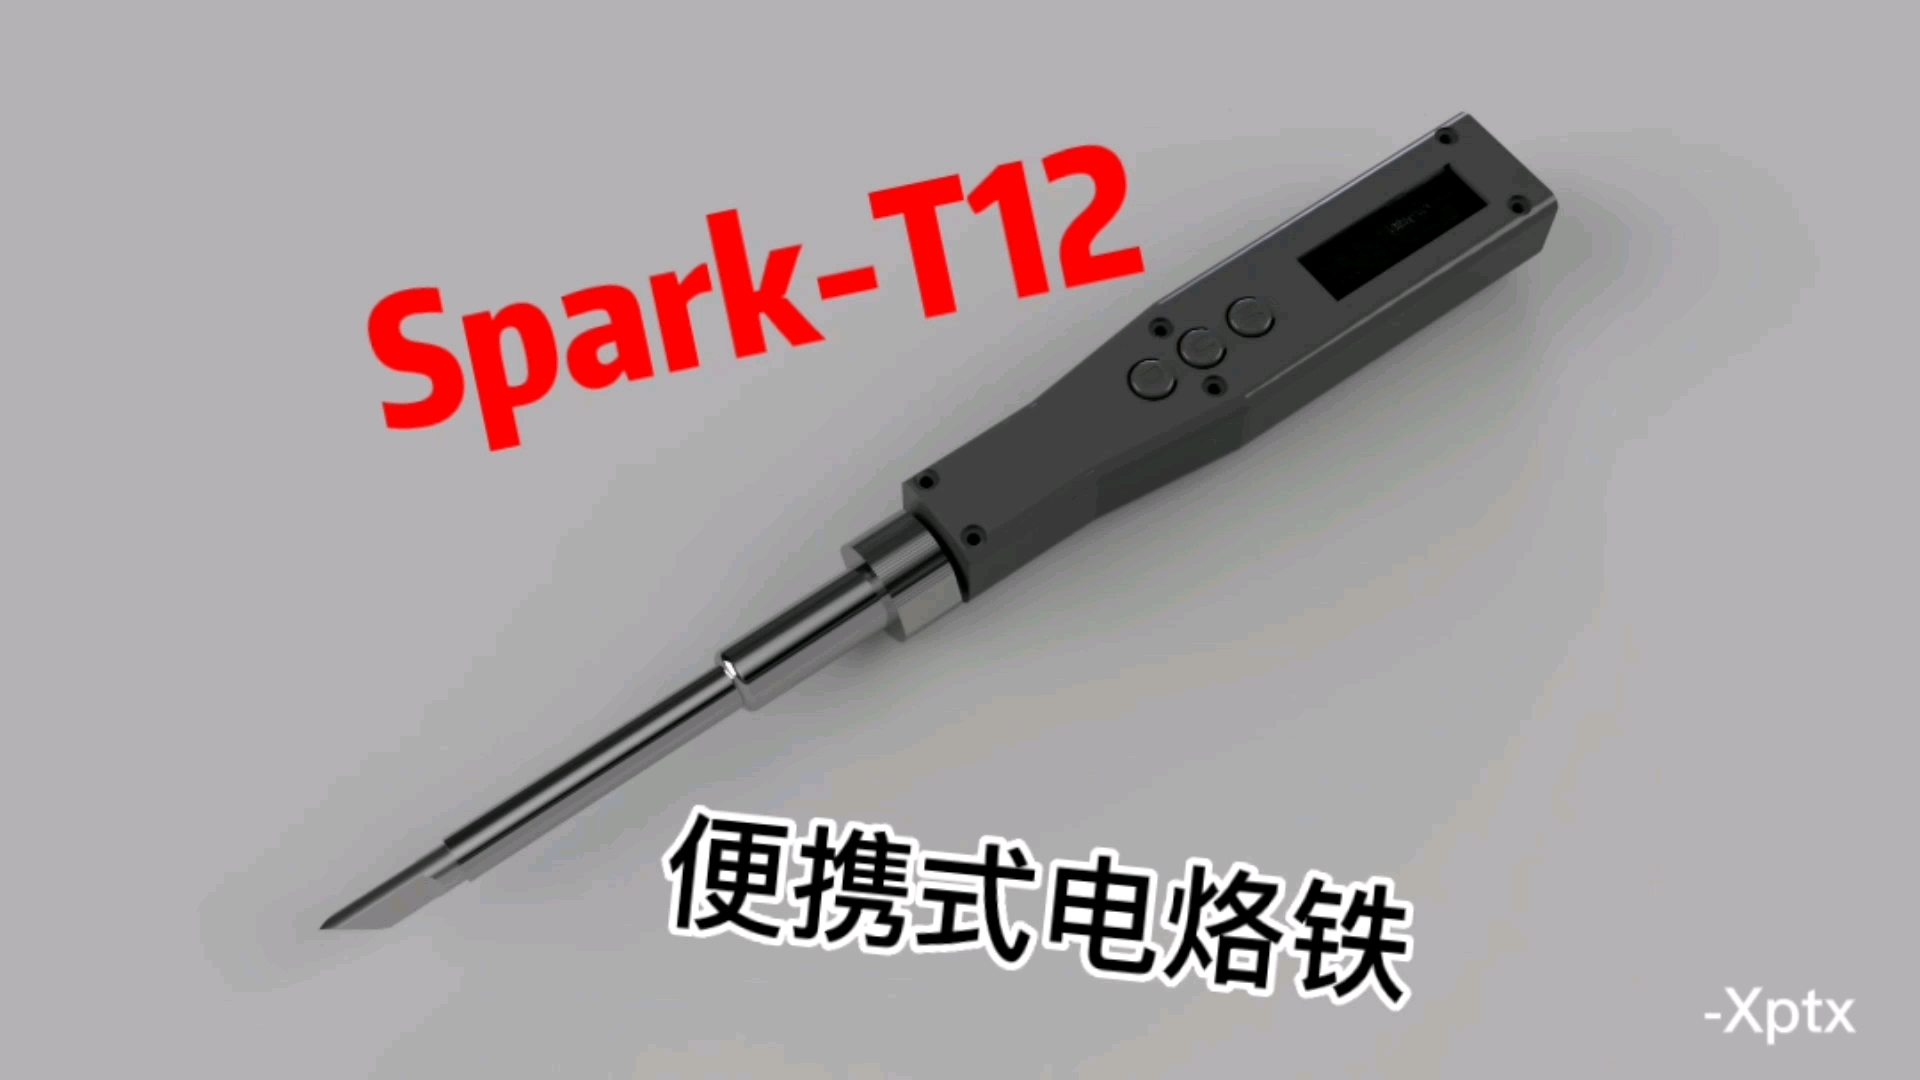 DIY便携式电烙铁 spark-T12电烙铁#电子设计 #DIY #硬件设计 #大学生电子设计#开源硬件 